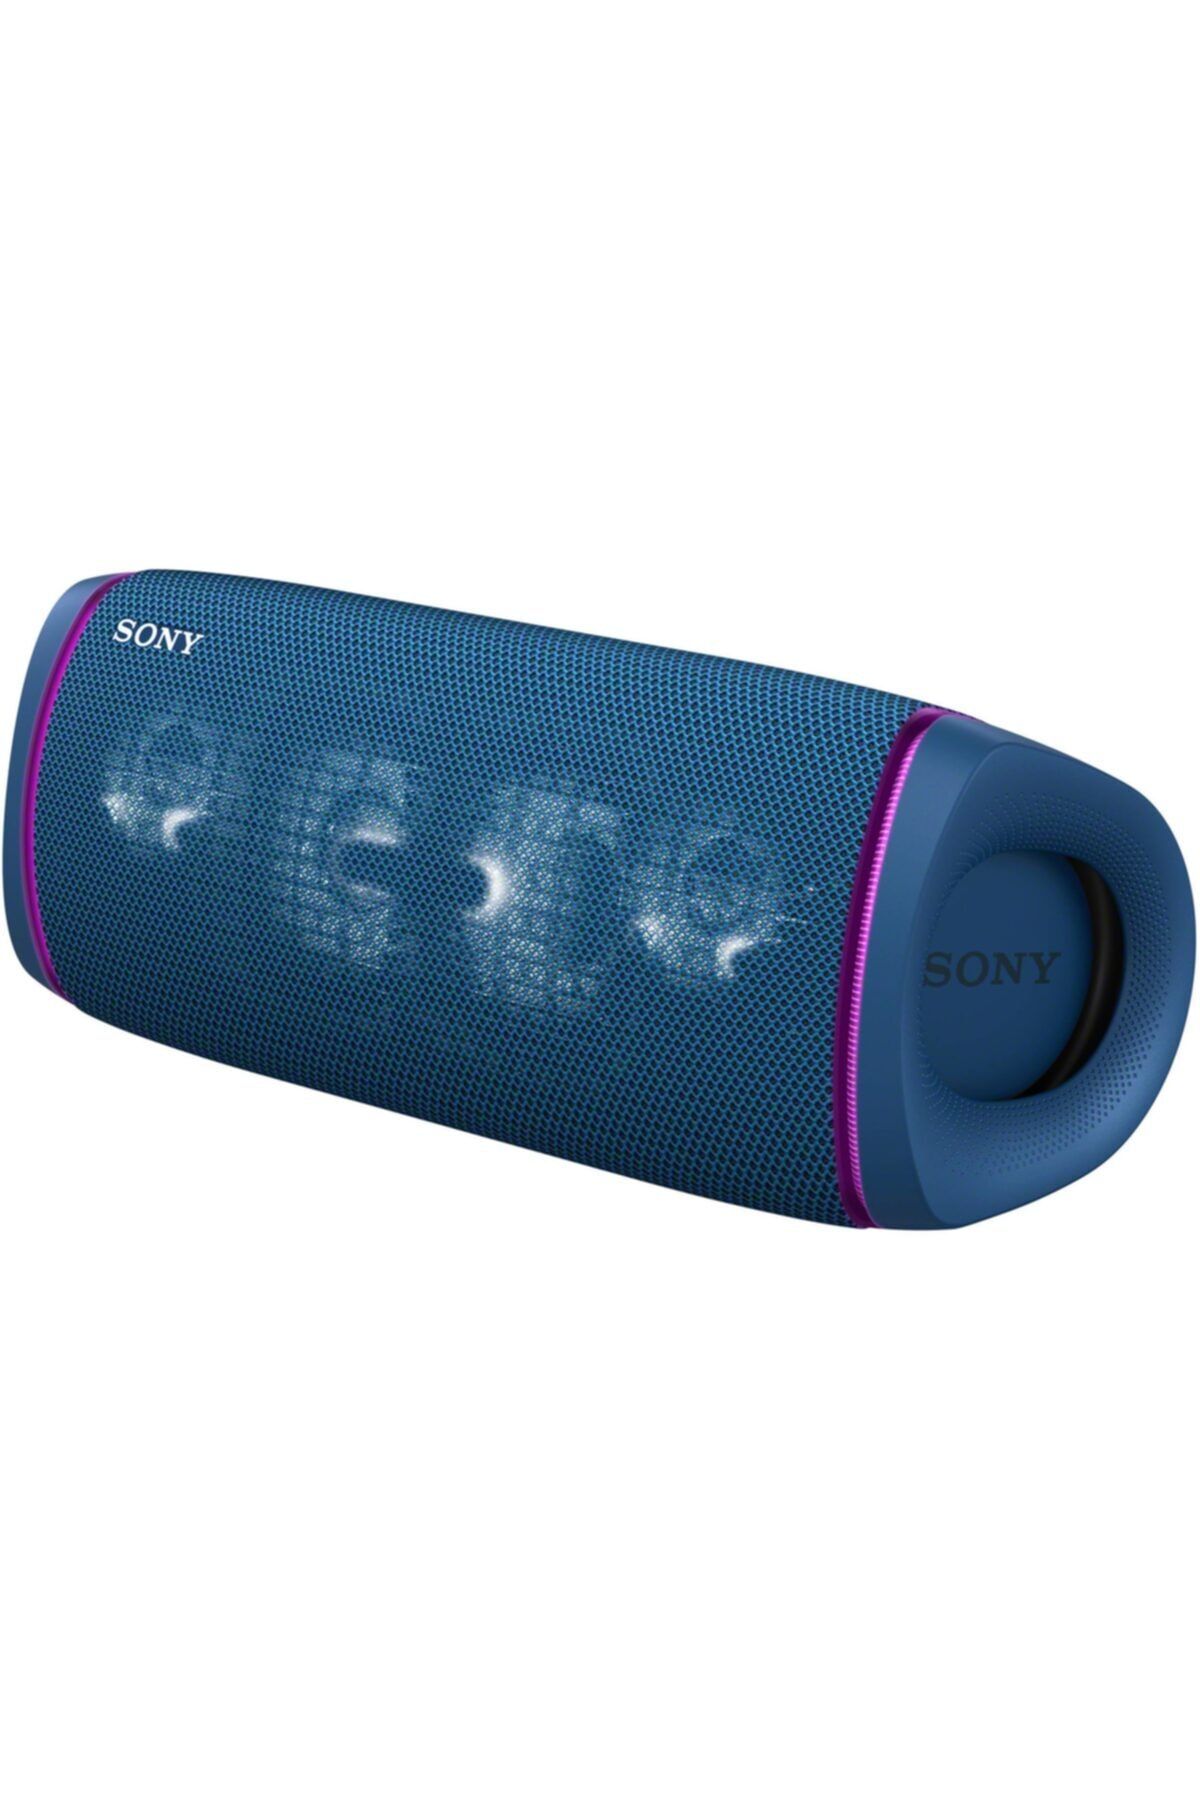 Sony SRSXB43B Extrabass Taşınabilir Bluetooth Hoparlör Mavi